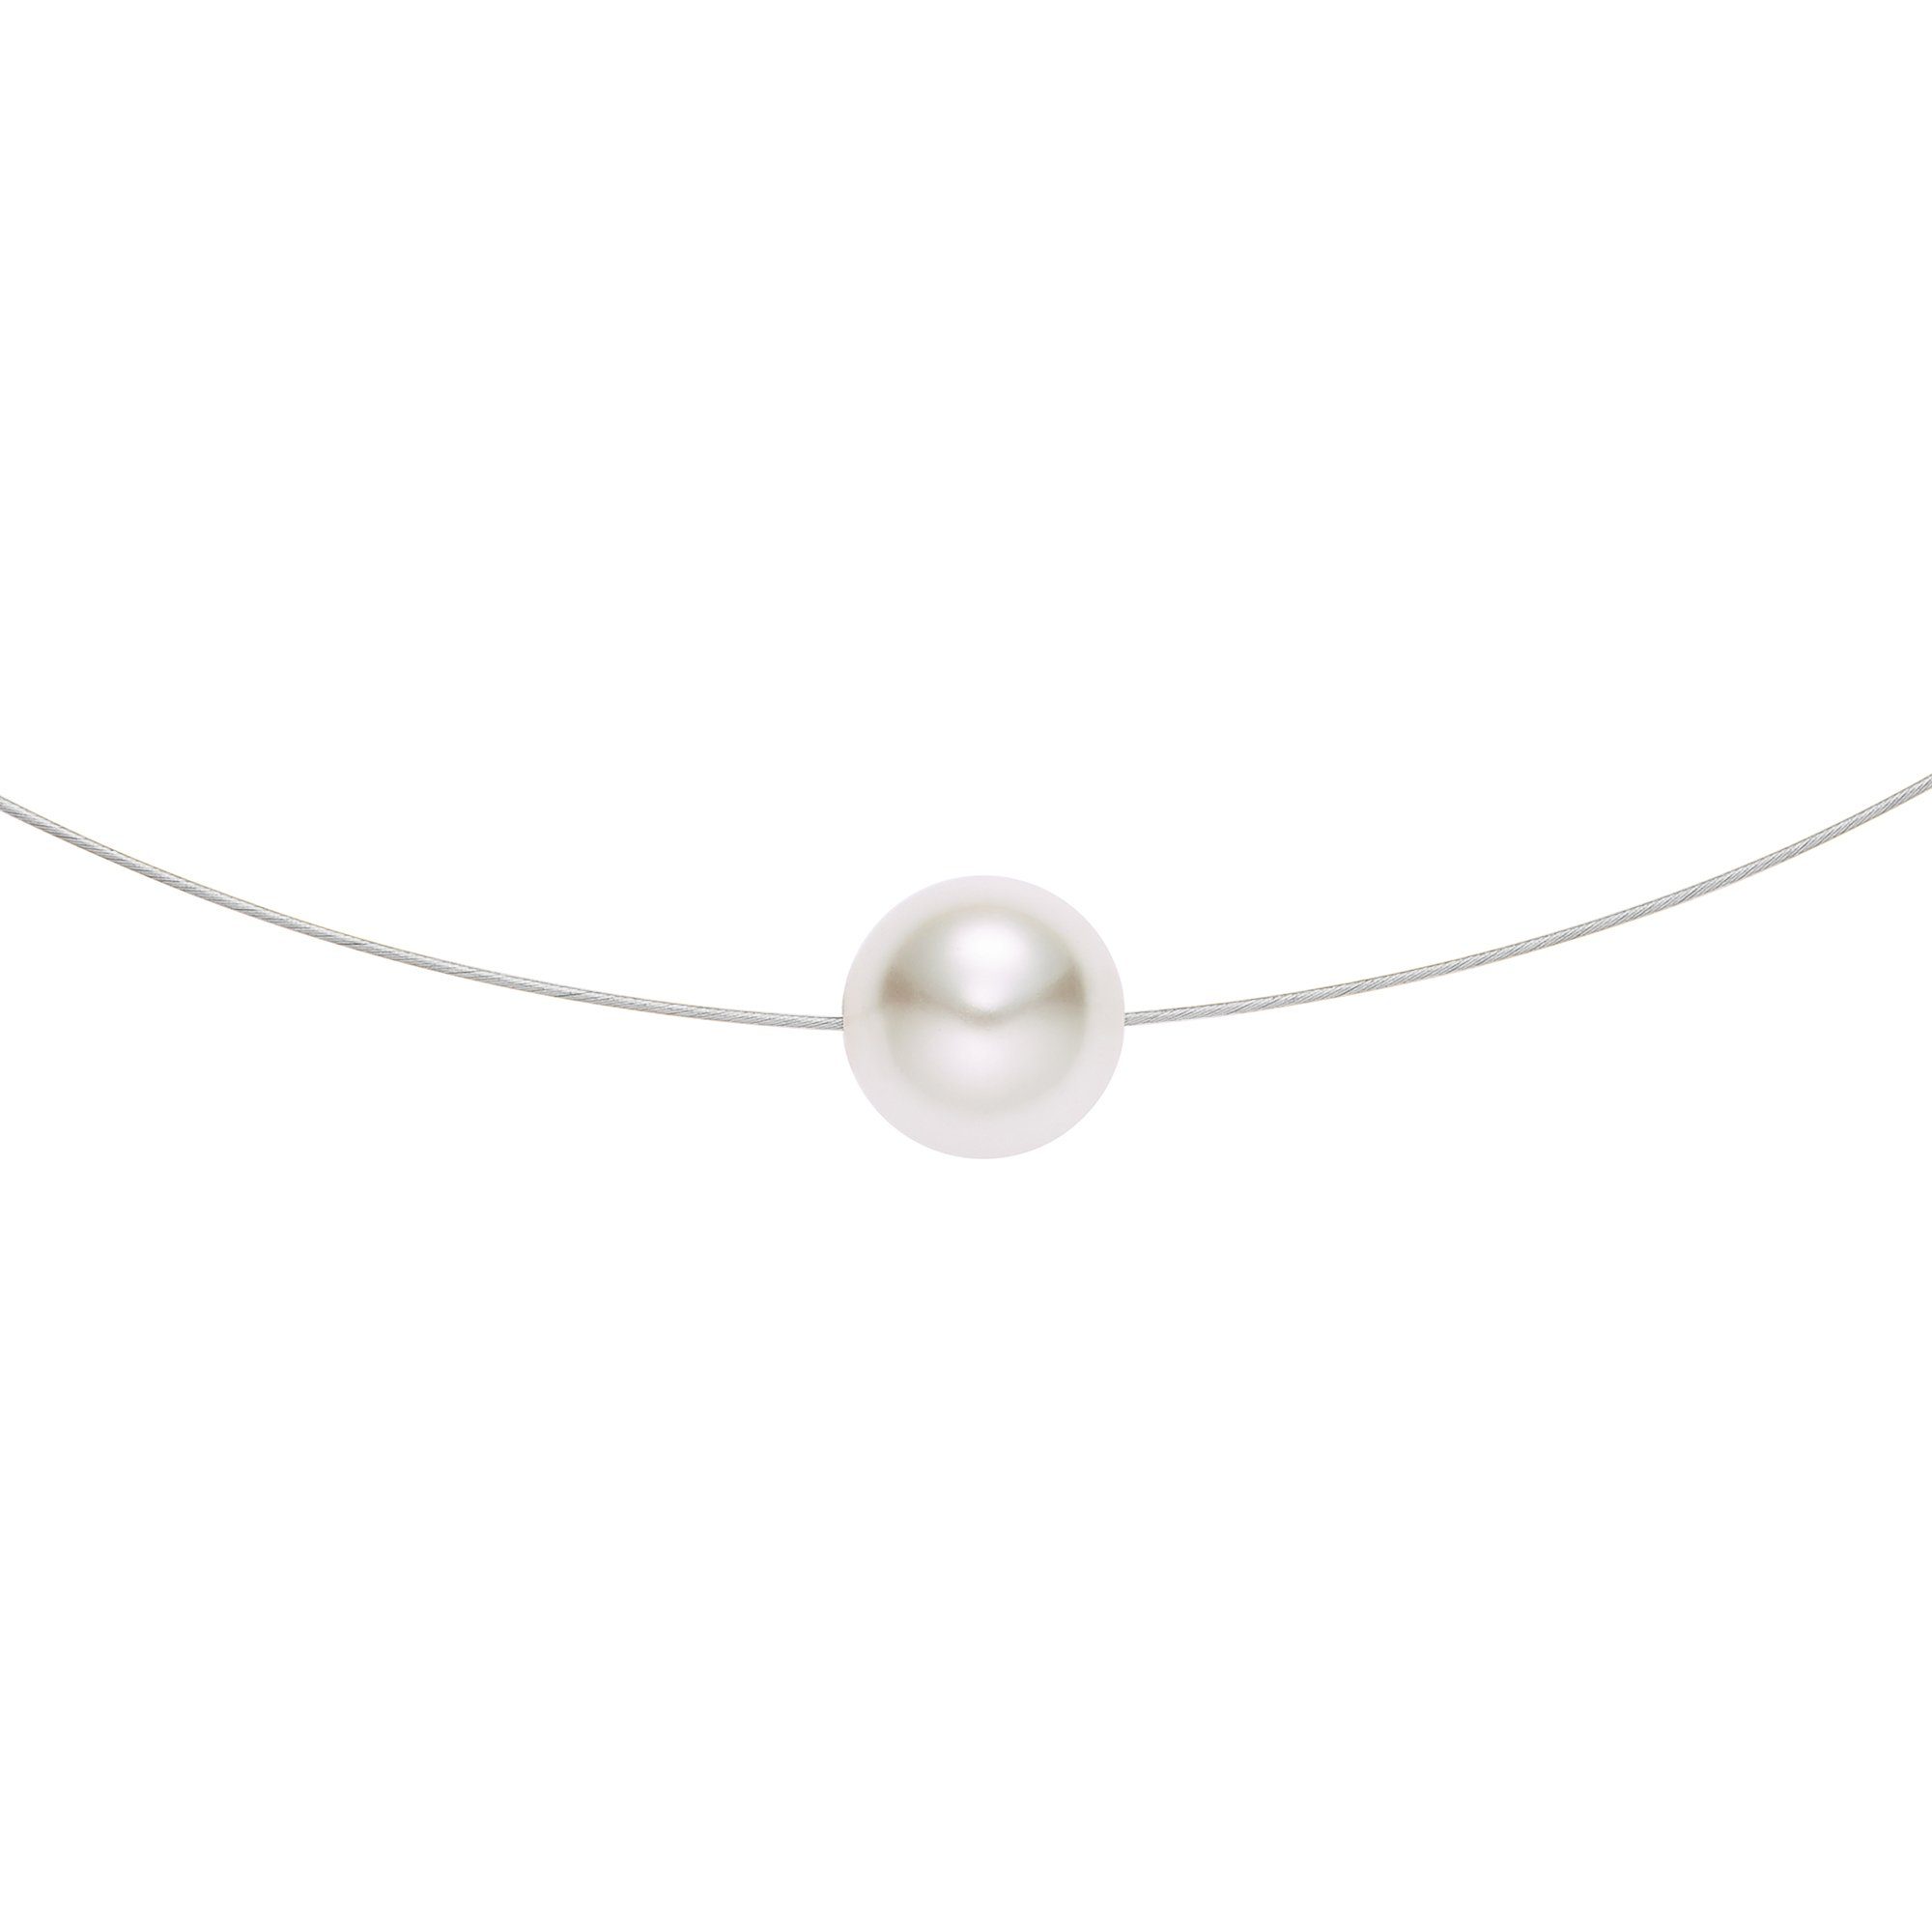 Heideman Collier Florere Single silberfarben glanzmatt (inkl. Geschenkverpackung), mit einer Perle Weiß